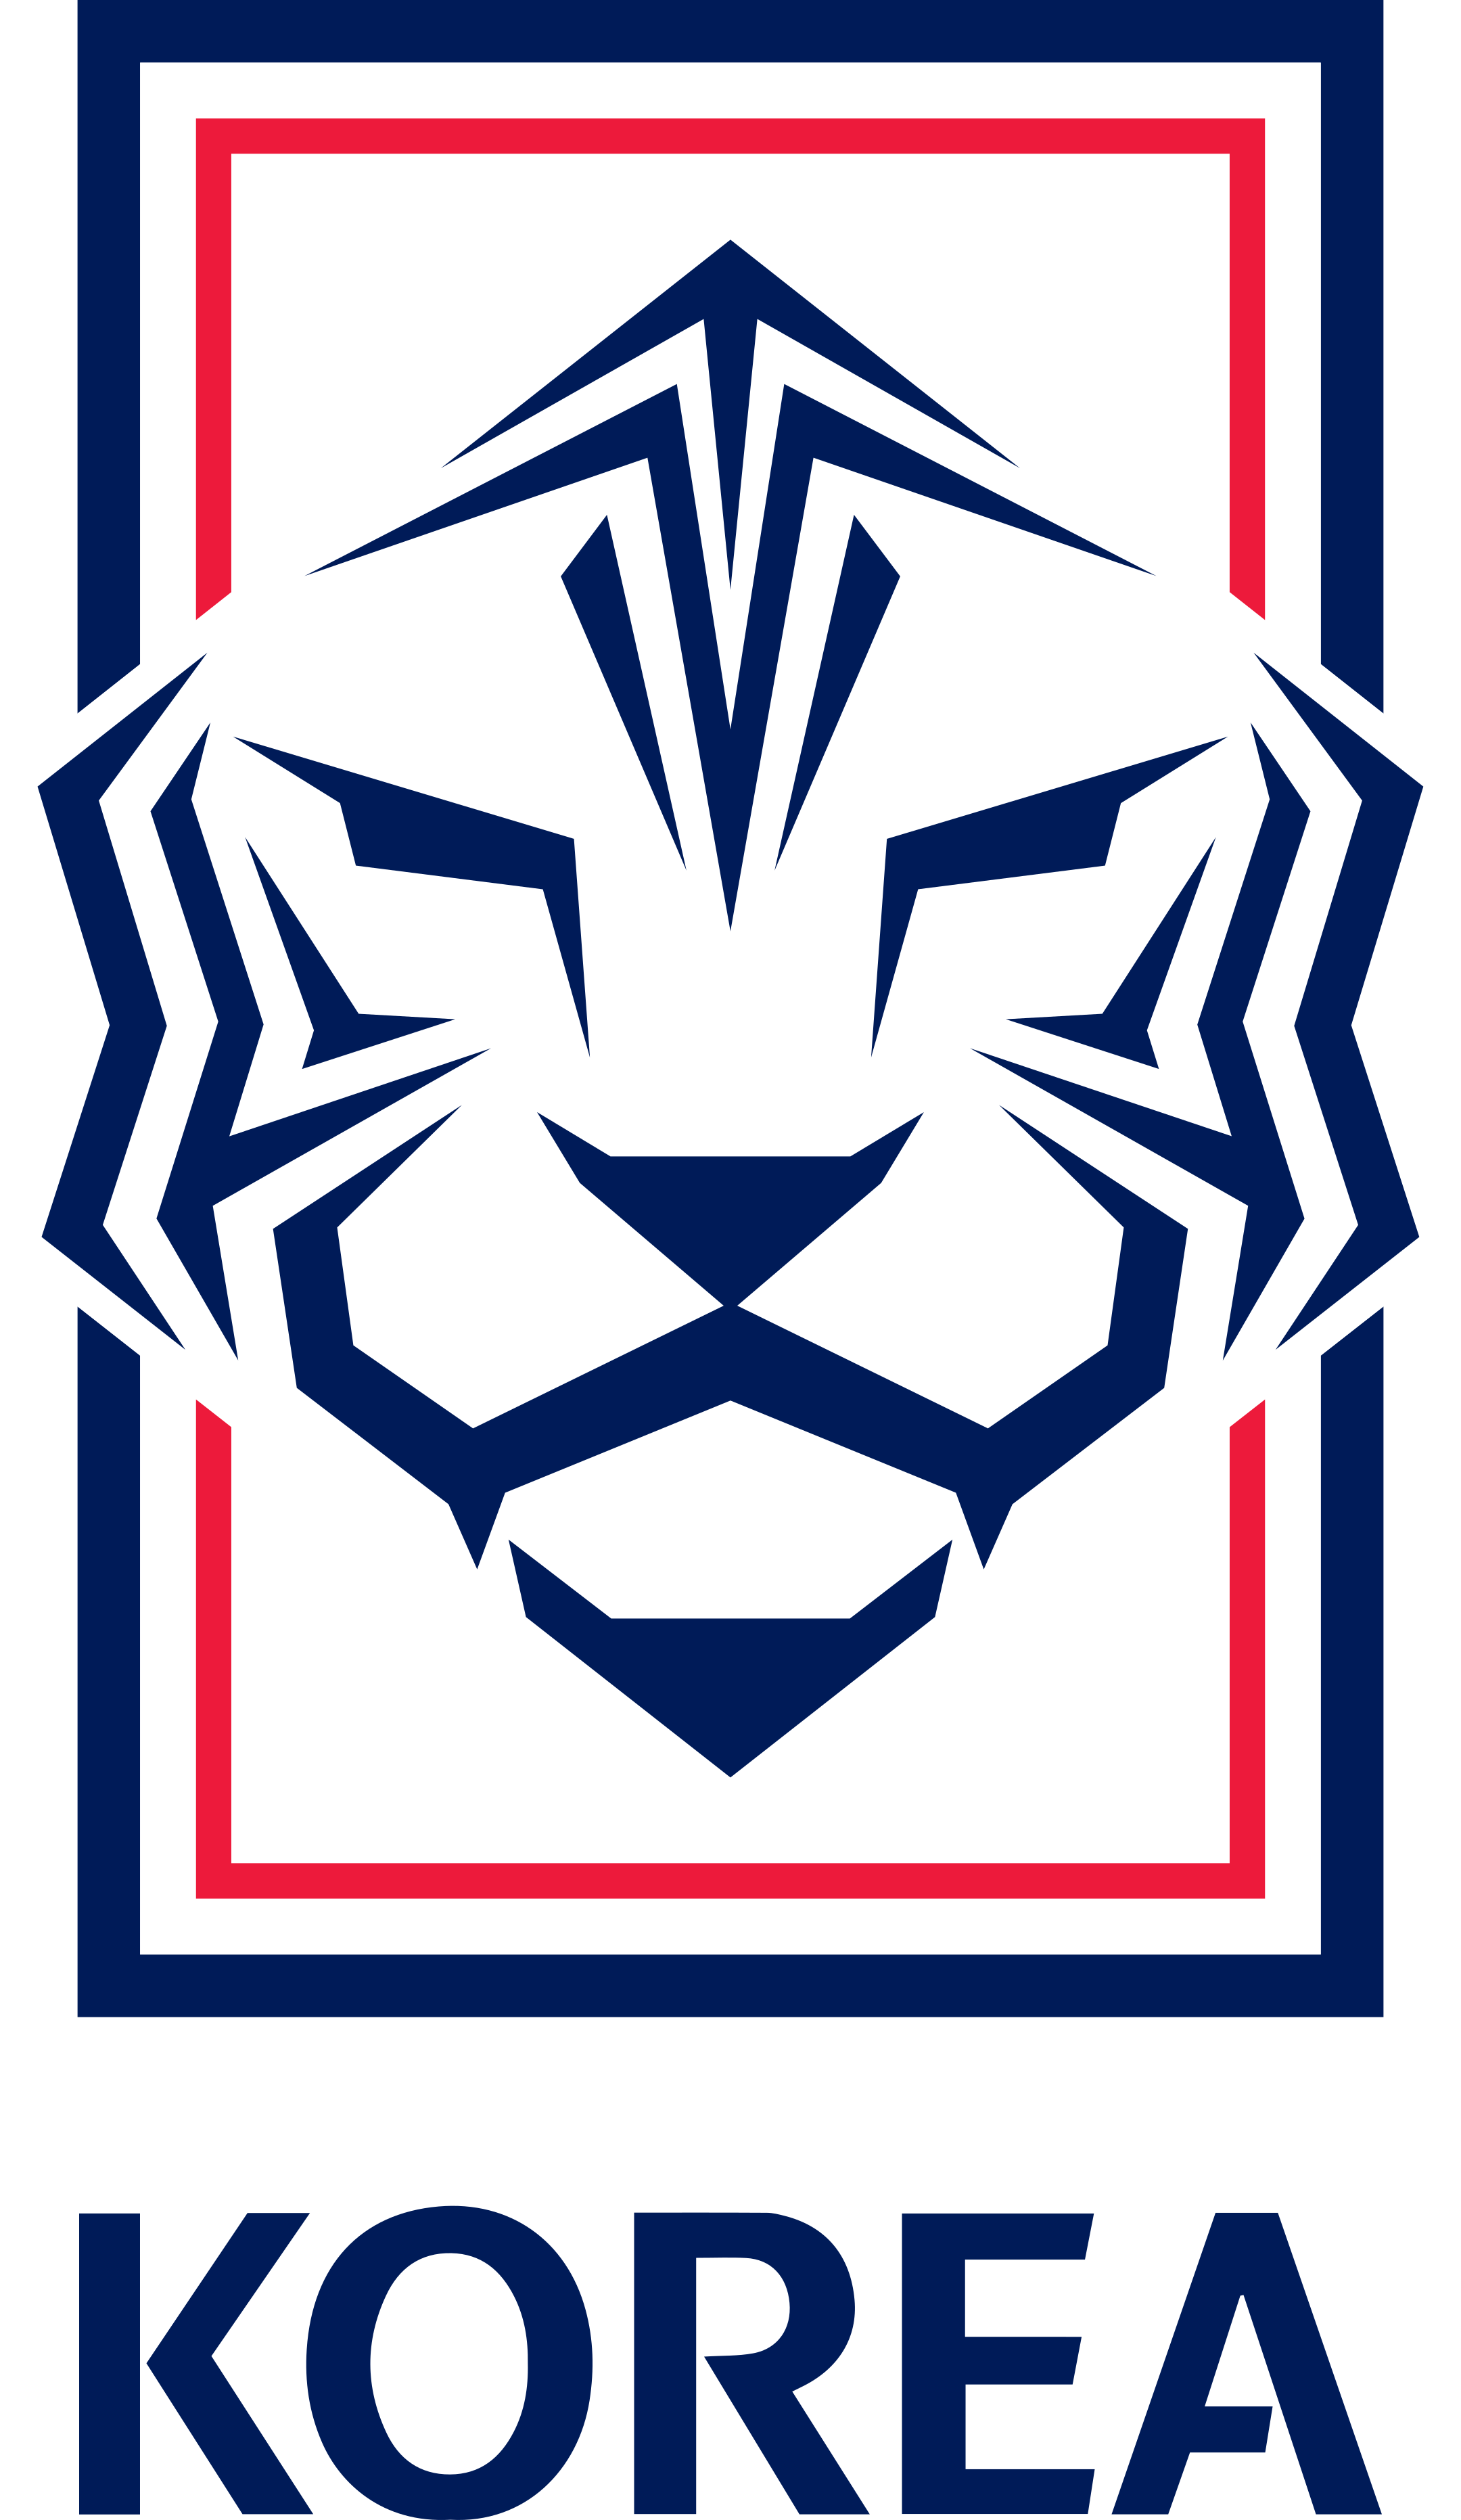 south korea national football team logo 2 - South Korea National Football Team Logo